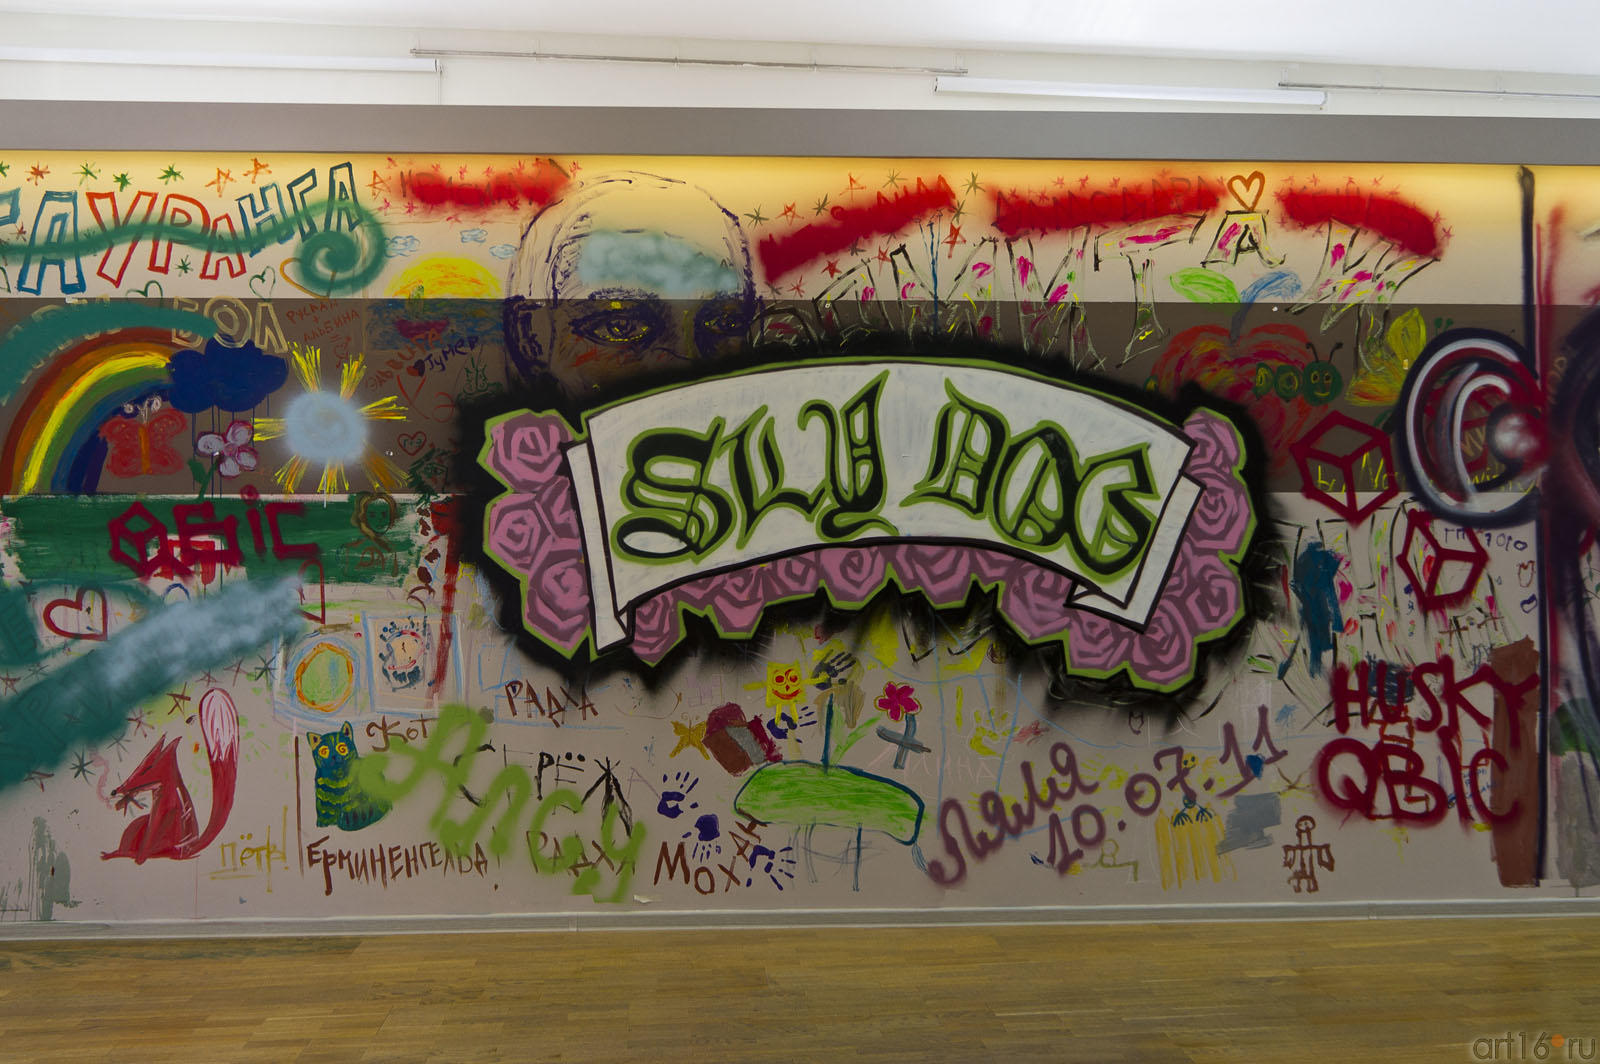 Теггинг райтеров и рисунки на стене посетителей ʺМанежаʺ::Граффити. Арт-акция «MANEGE Art MAUER» — 2011